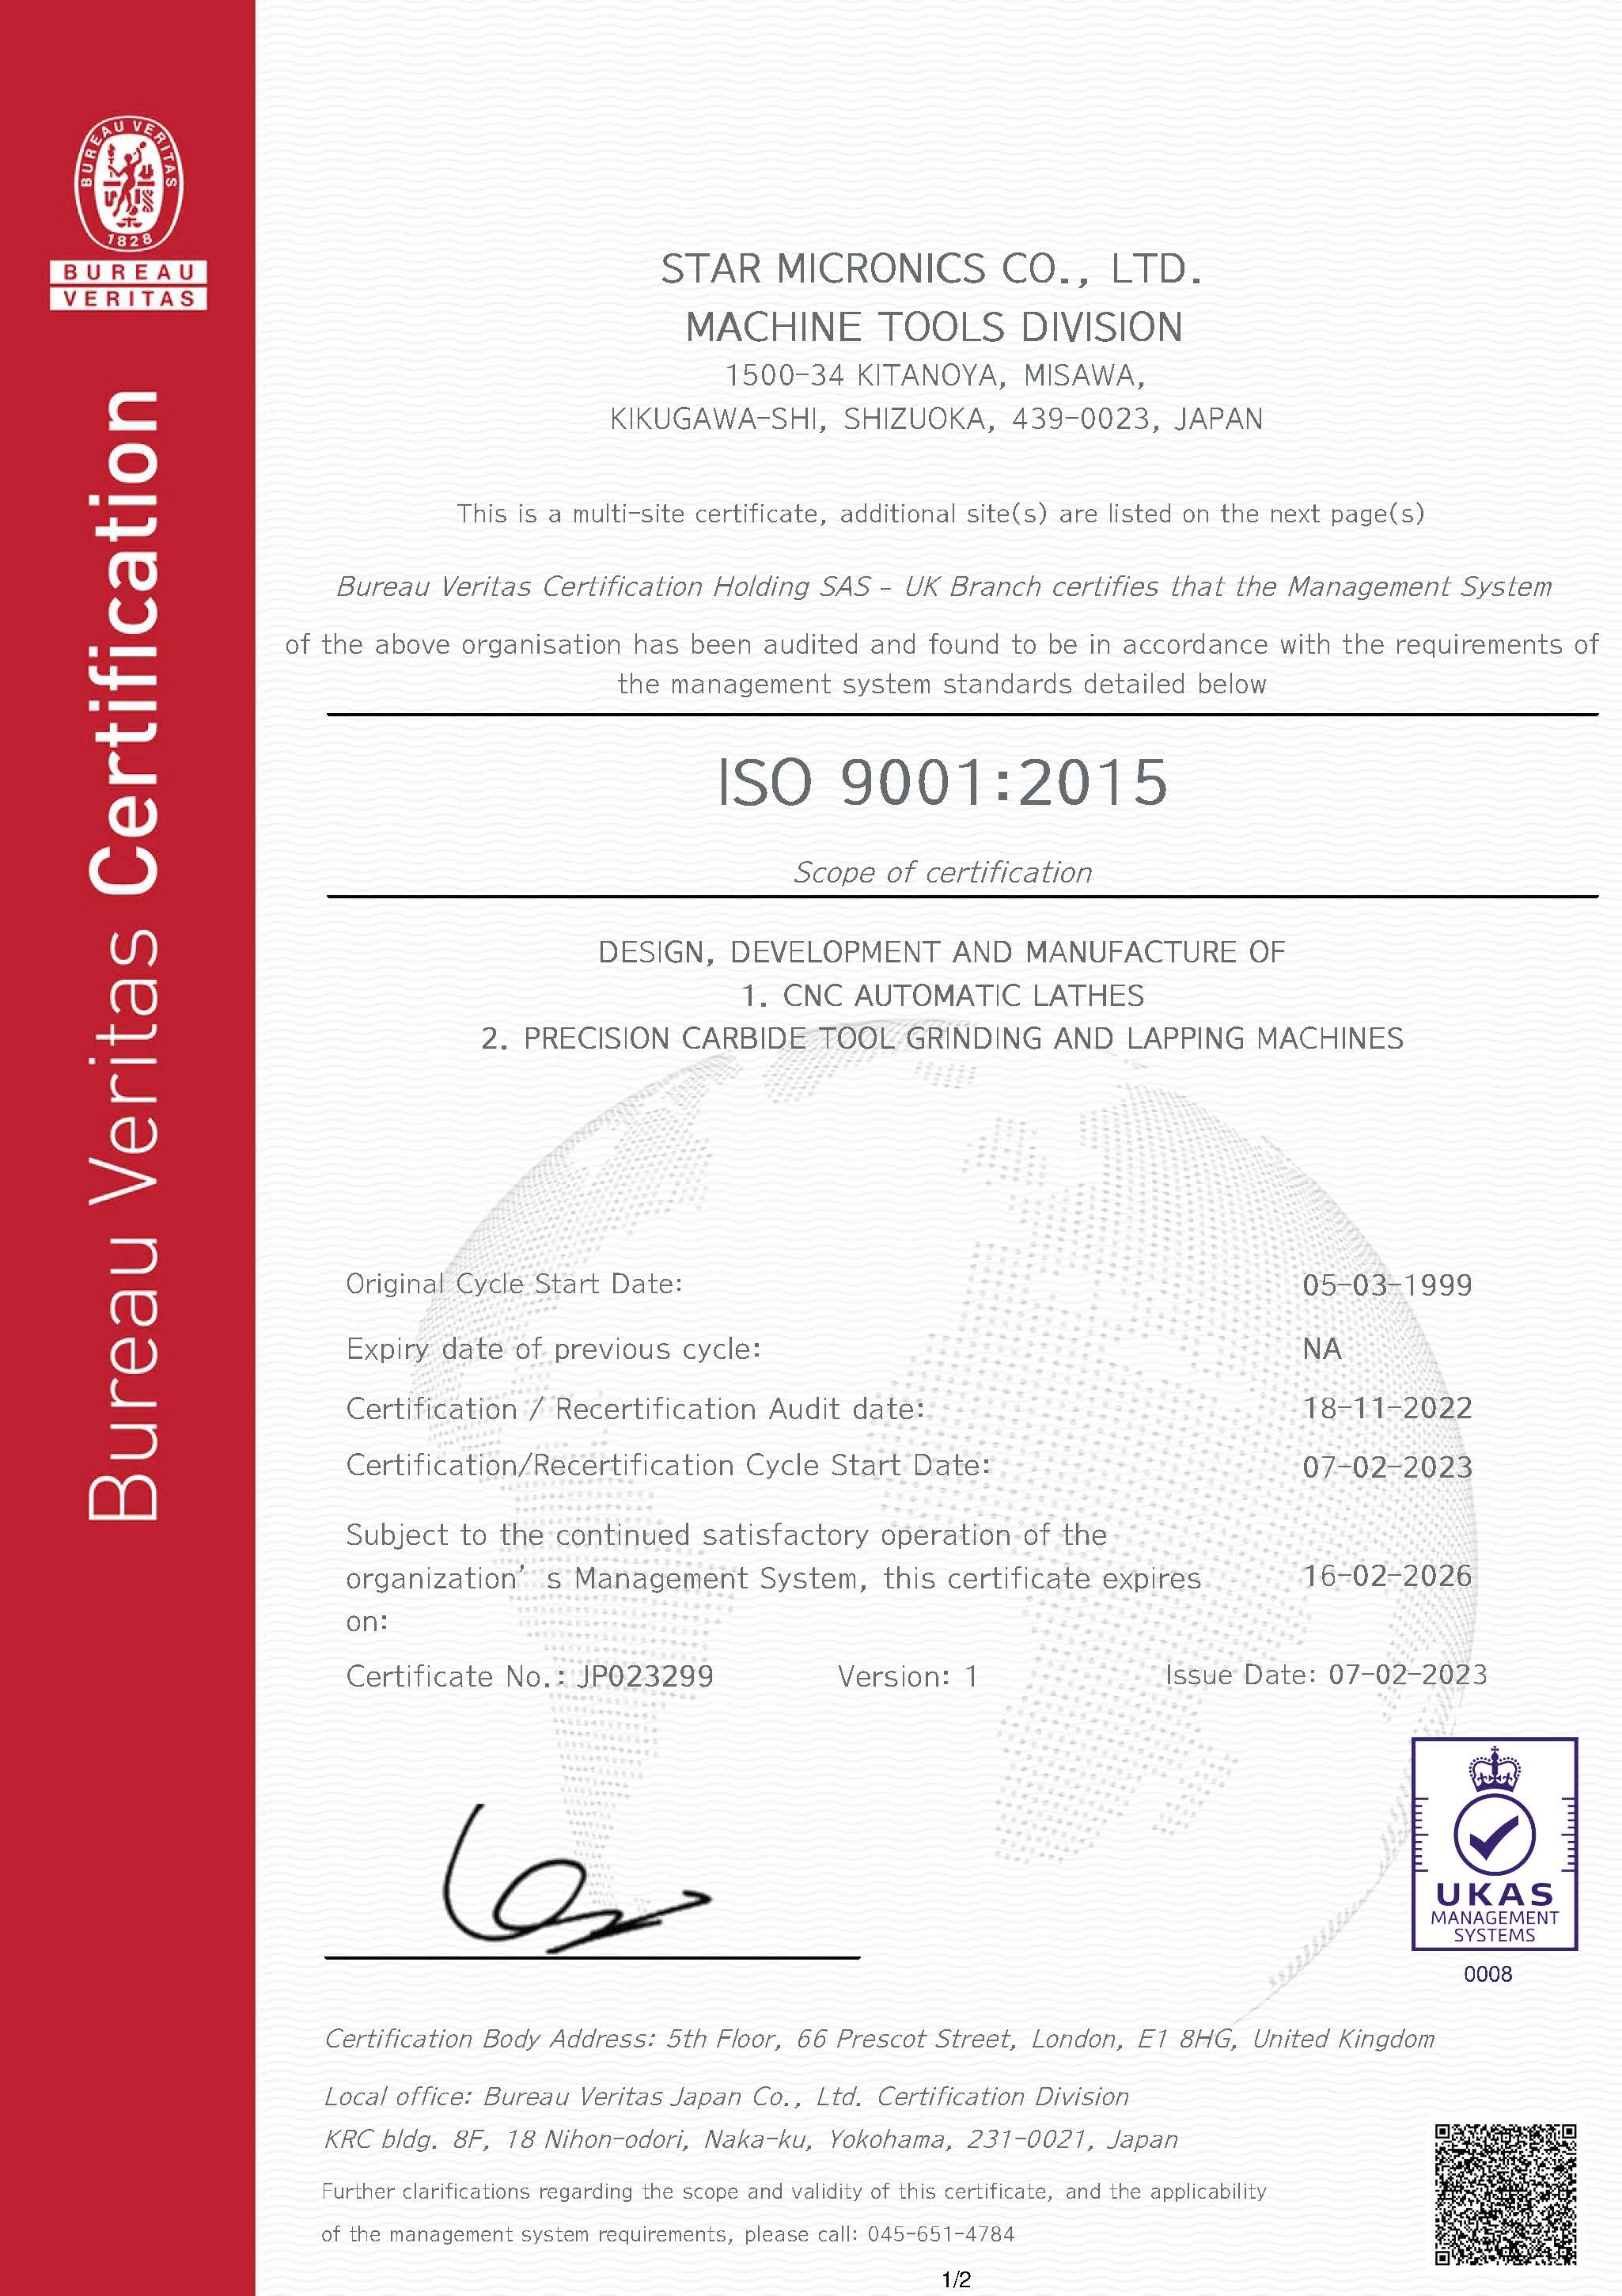 ISO-Zertifikat 9001